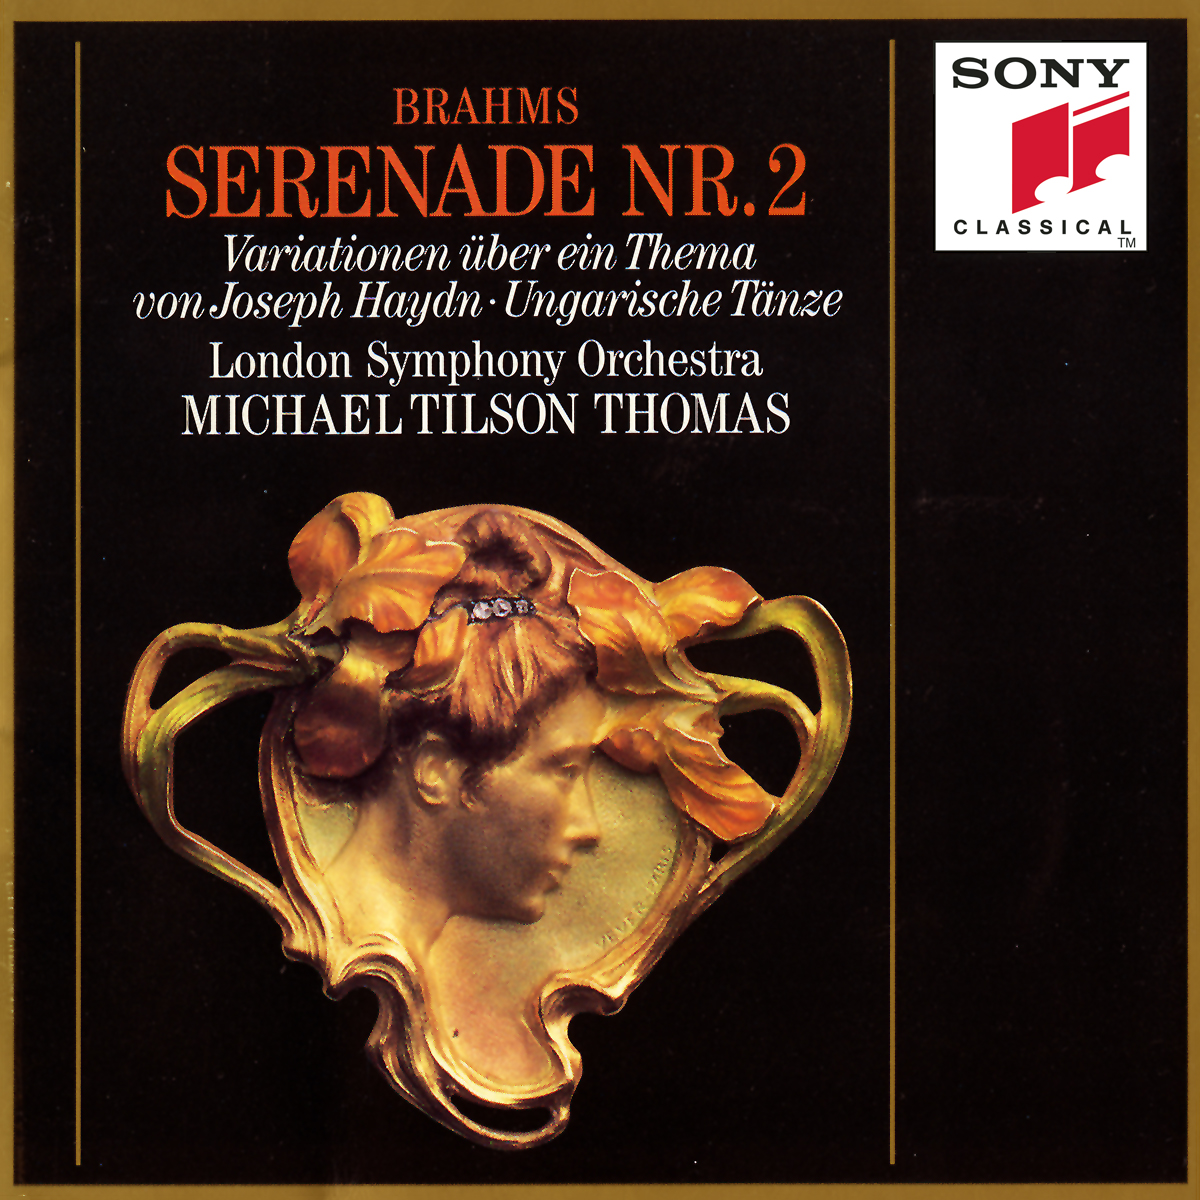 Serenade No. 2 in A Major, Op. 16 for Small Orchestra:I. Allegro moderato